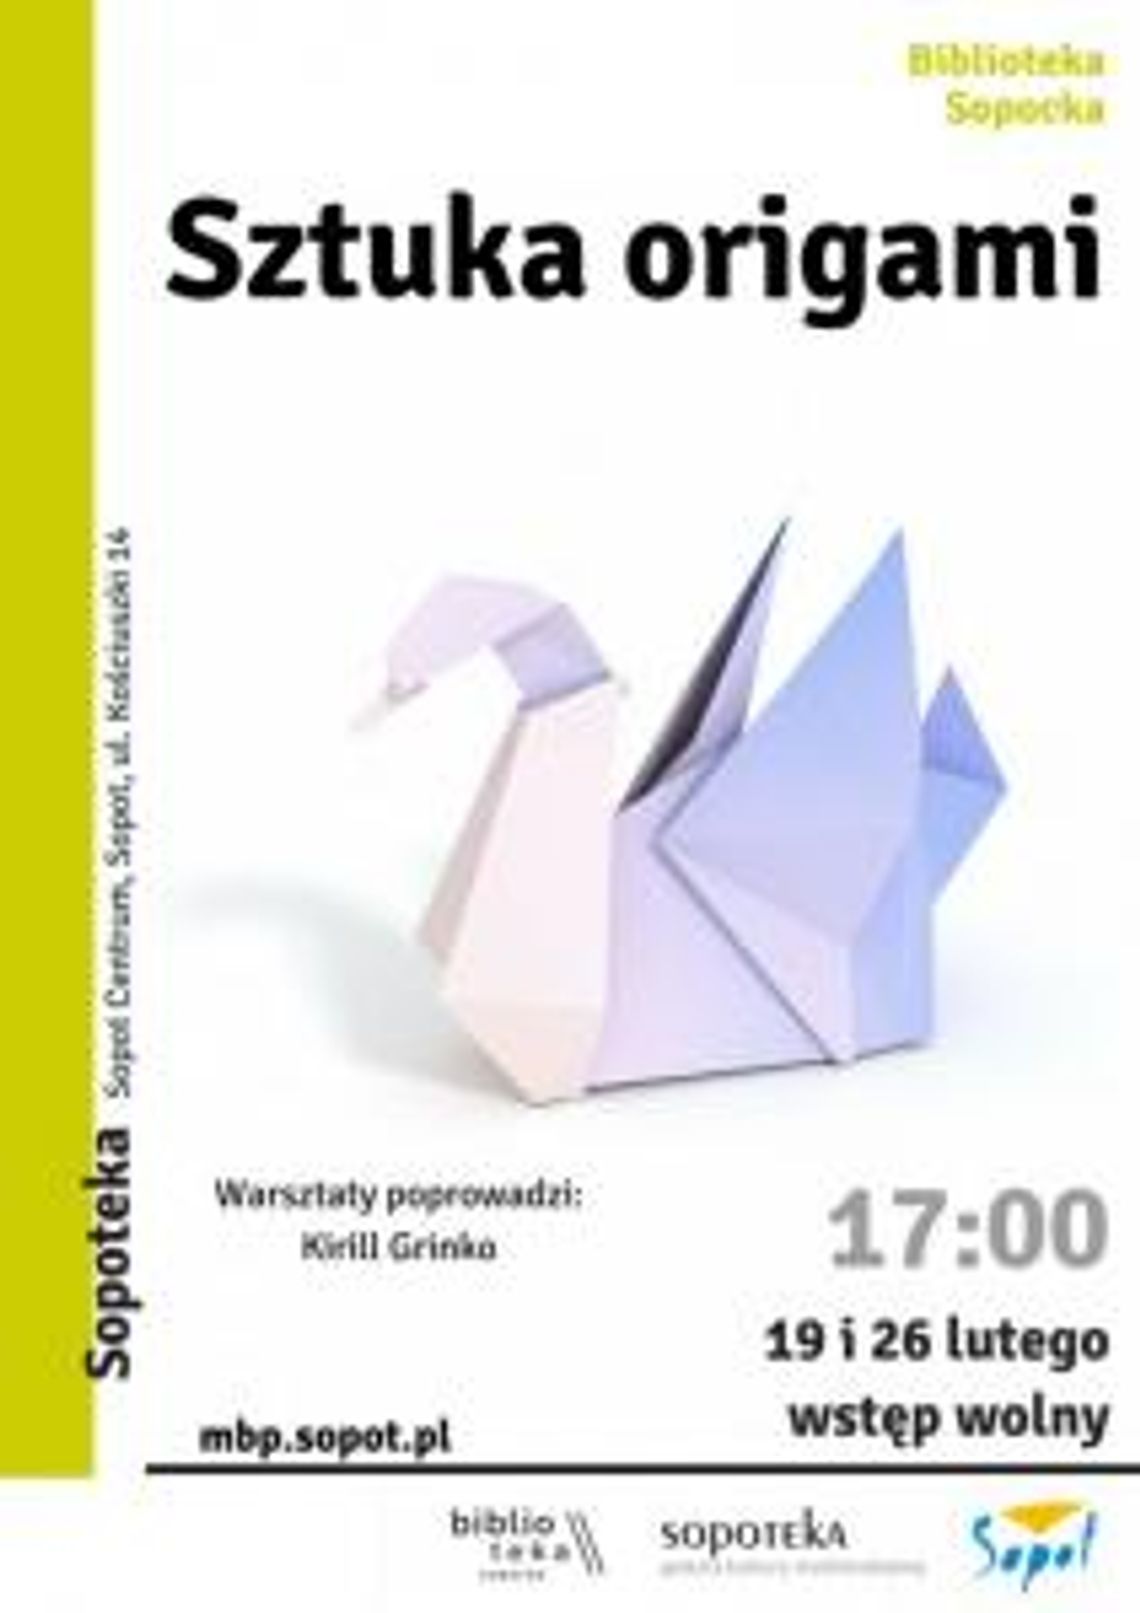 Warsztaty origami.